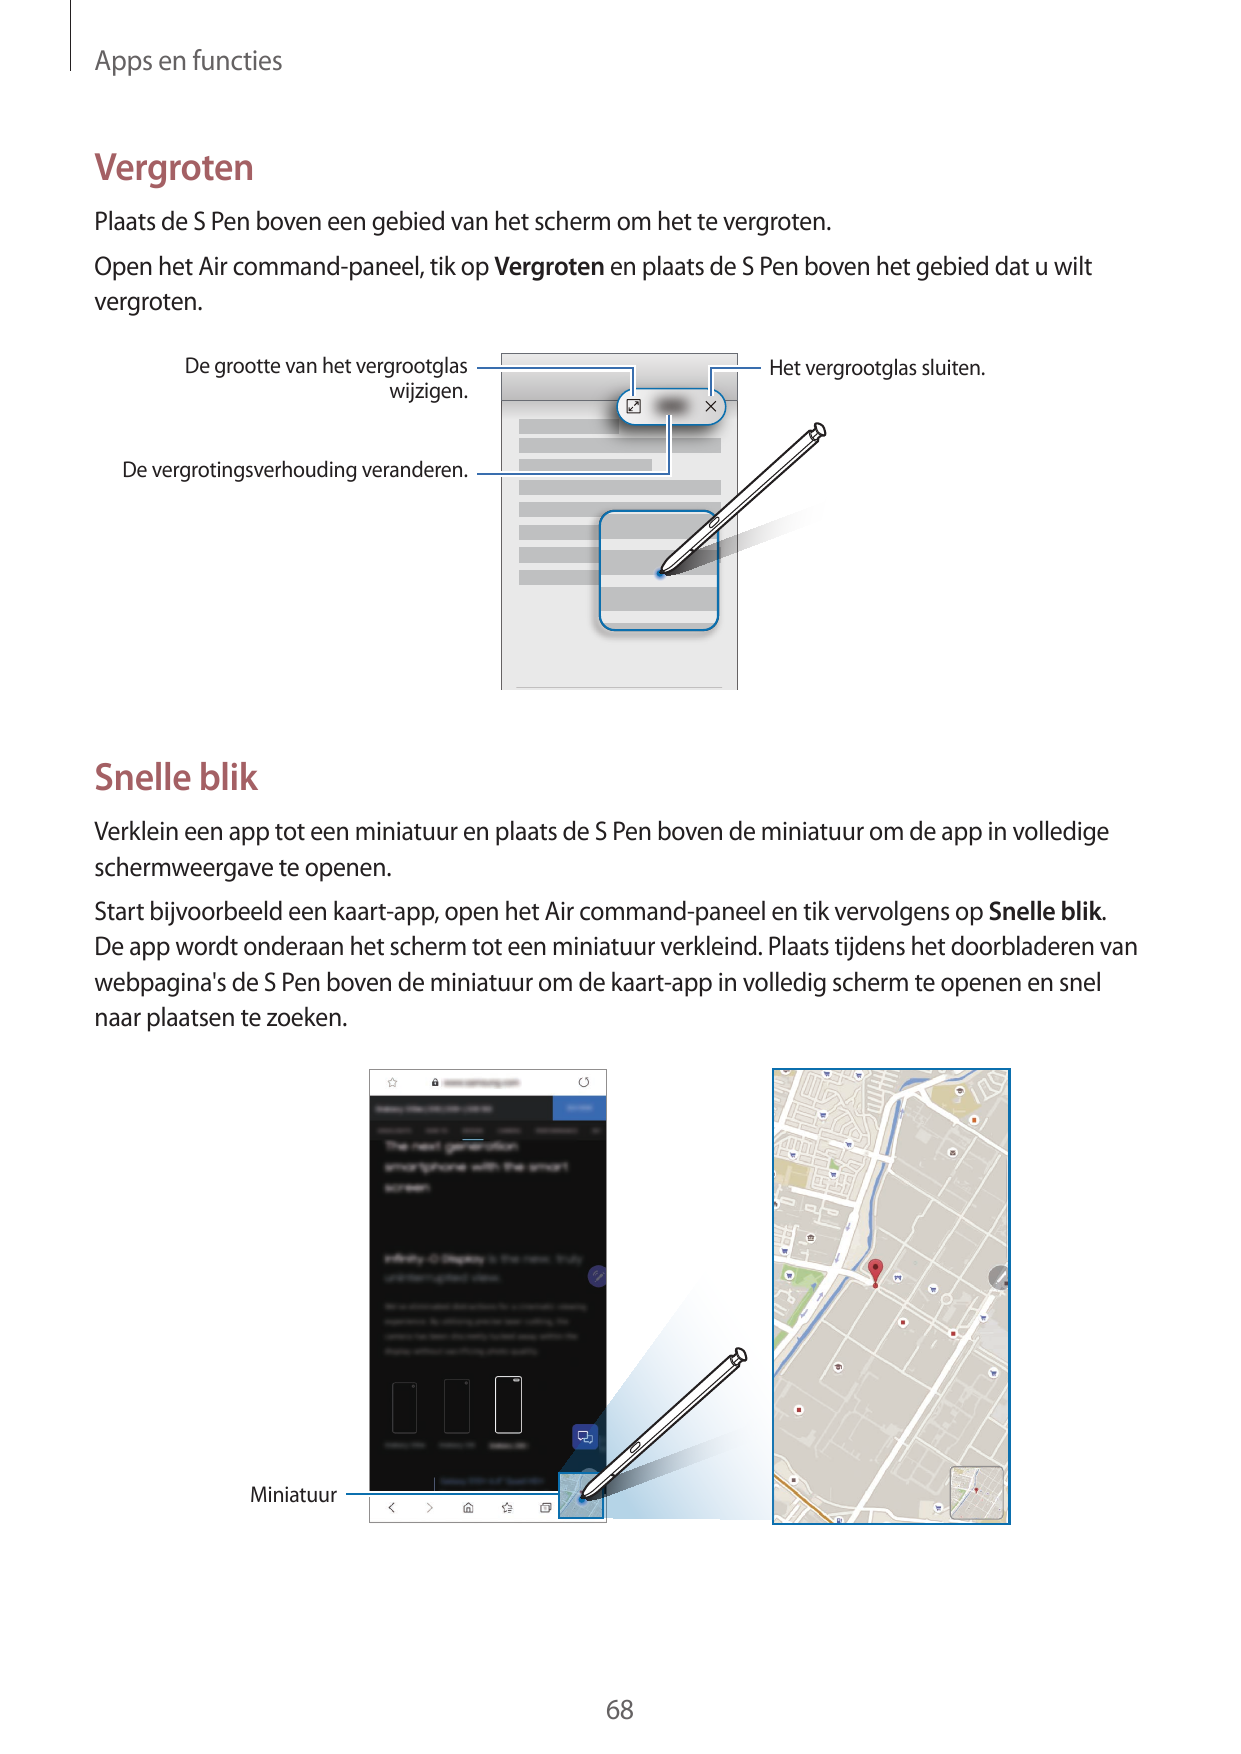 Apps en functiesVergrotenPlaats de S Pen boven een gebied van het scherm om het te vergroten.Open het Air command-paneel, tik op